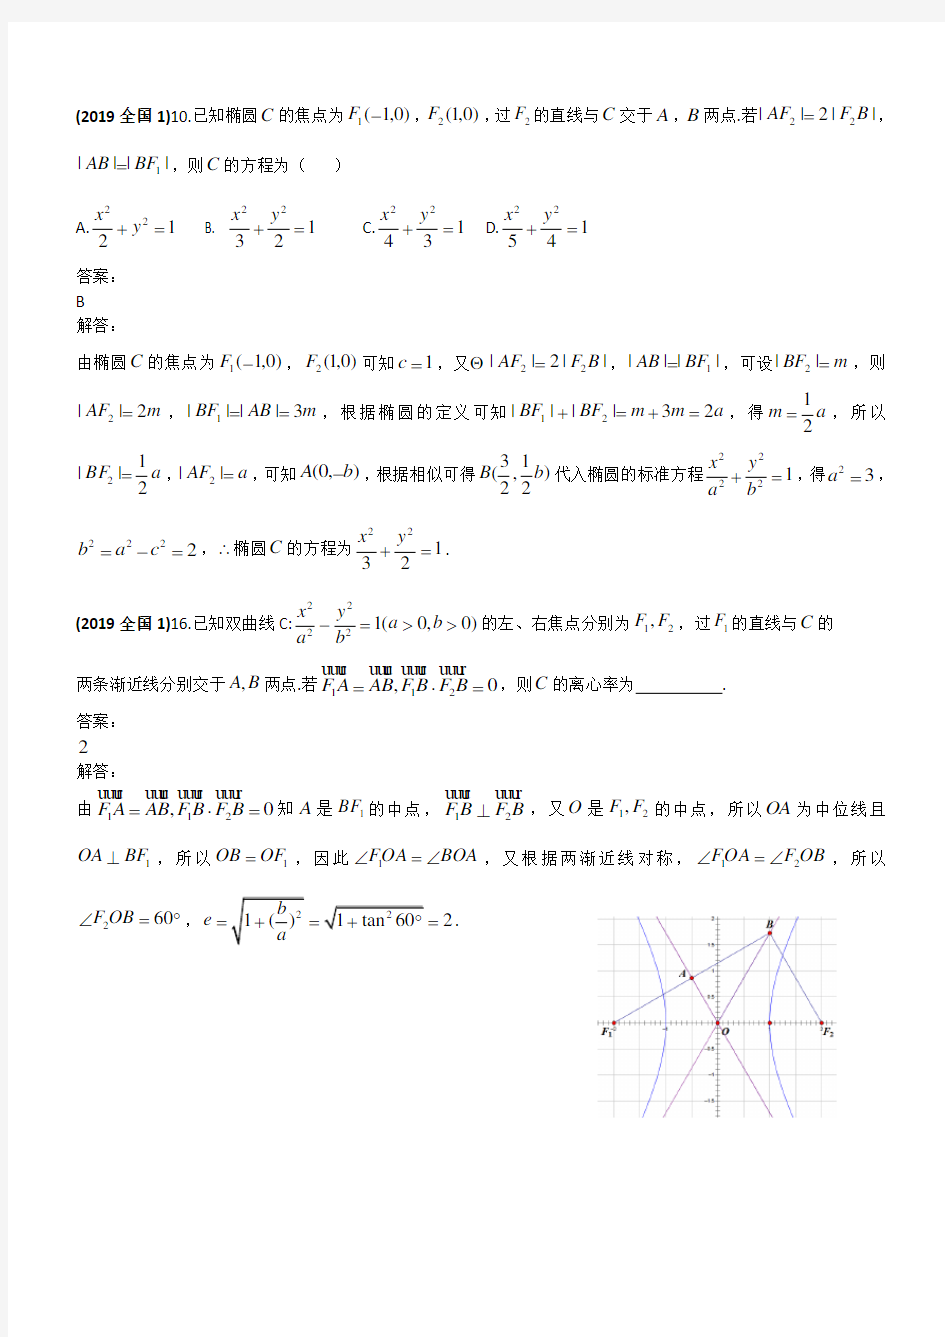 2019年高考试题汇编理科数学--圆锥曲线